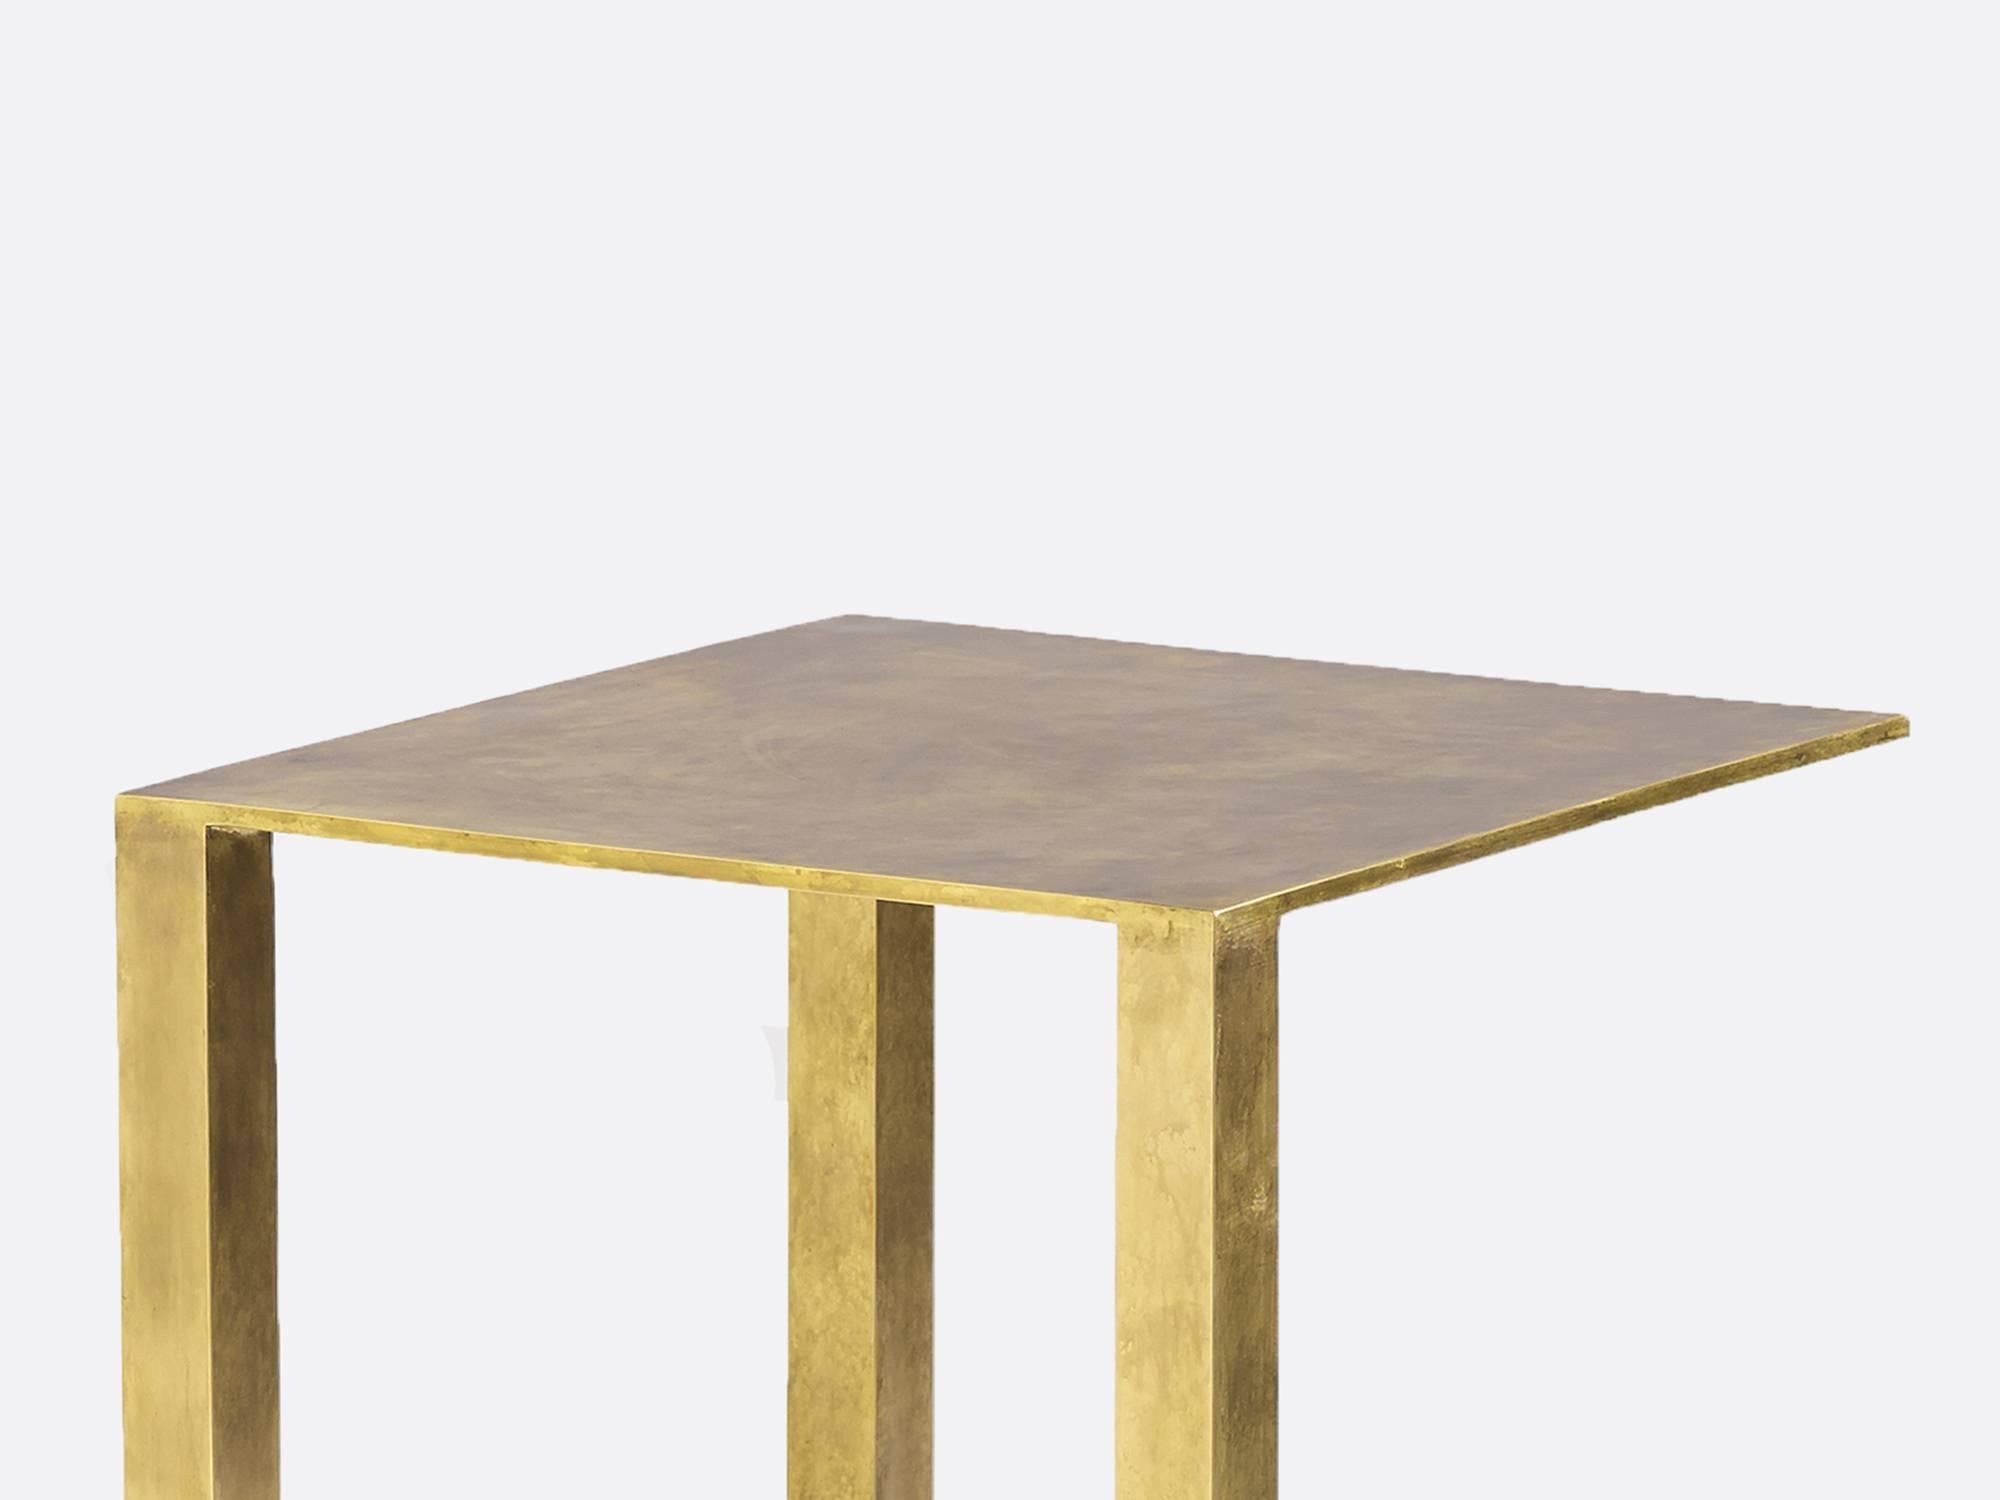 Table en bronze et laiton coulé du designer Brian Thoreen, basé à Los Angeles. Des tailles et des finitions personnalisées sont disponibles.